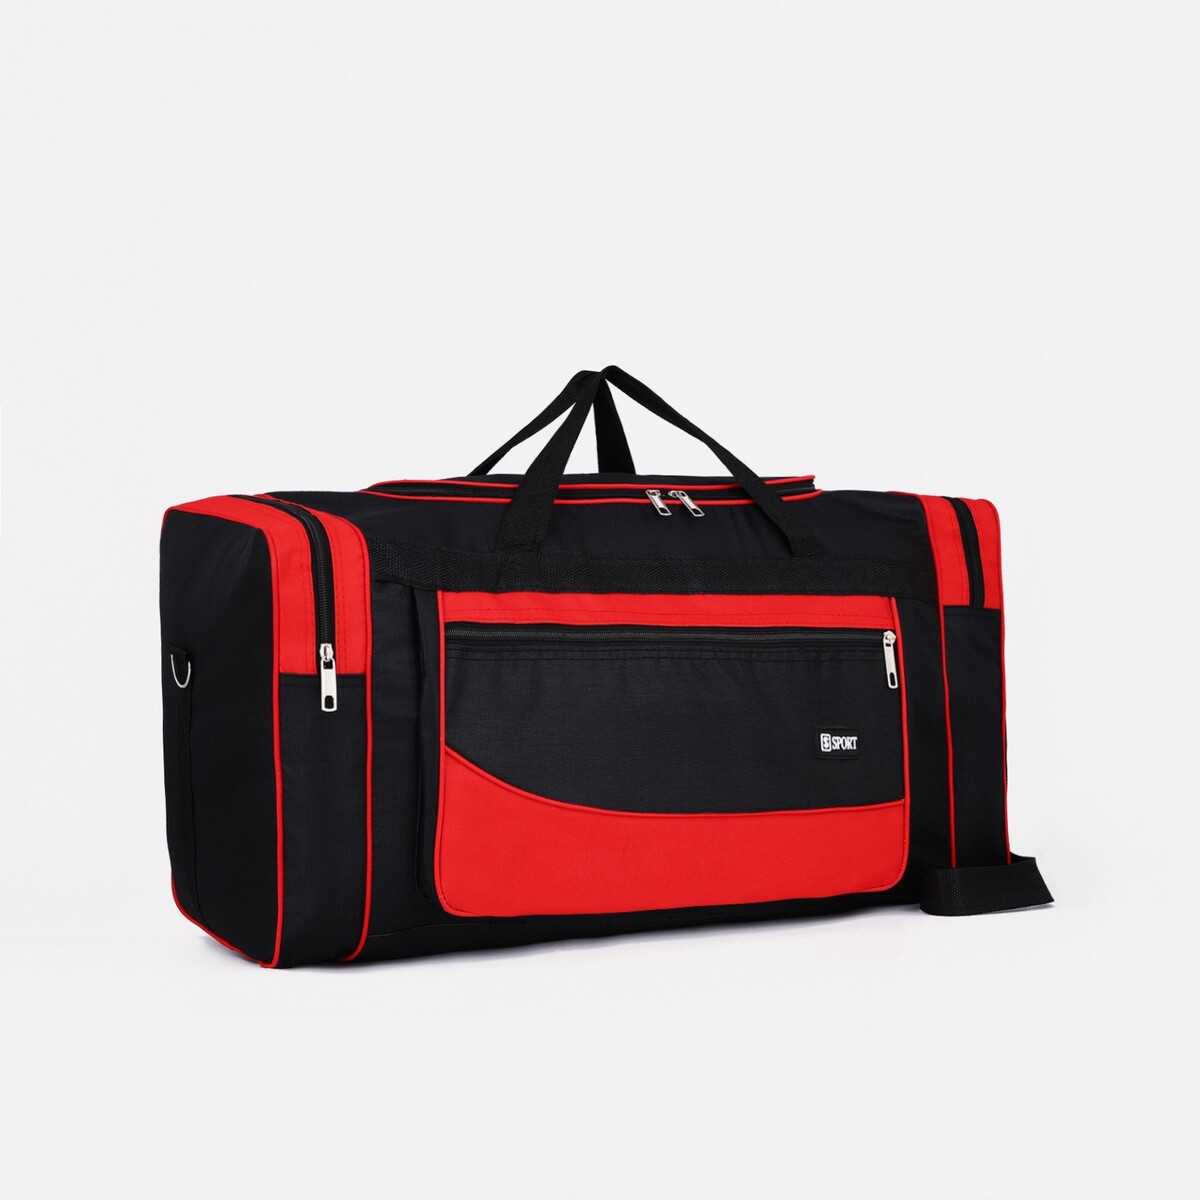 Сумка дорожная, 3 отдела на молниях, наружный карман, длинный ремень, цвет черный/красный сумка спортивная на молнии наружный карман длинный ремень серый